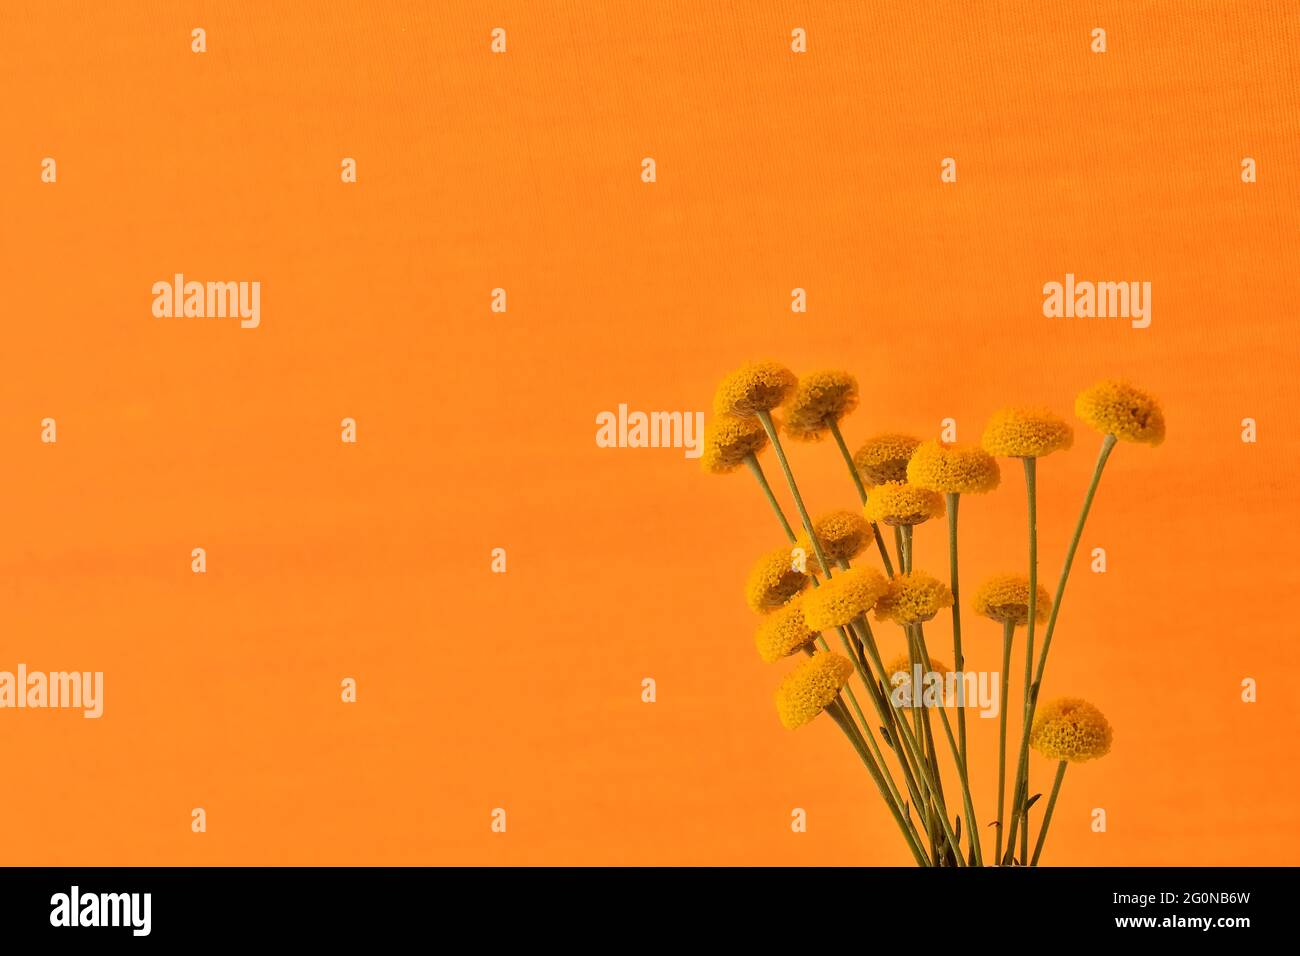 Yellow flowers of Santolina (Santolina rosmarinifolia) on orange background Stock Photo